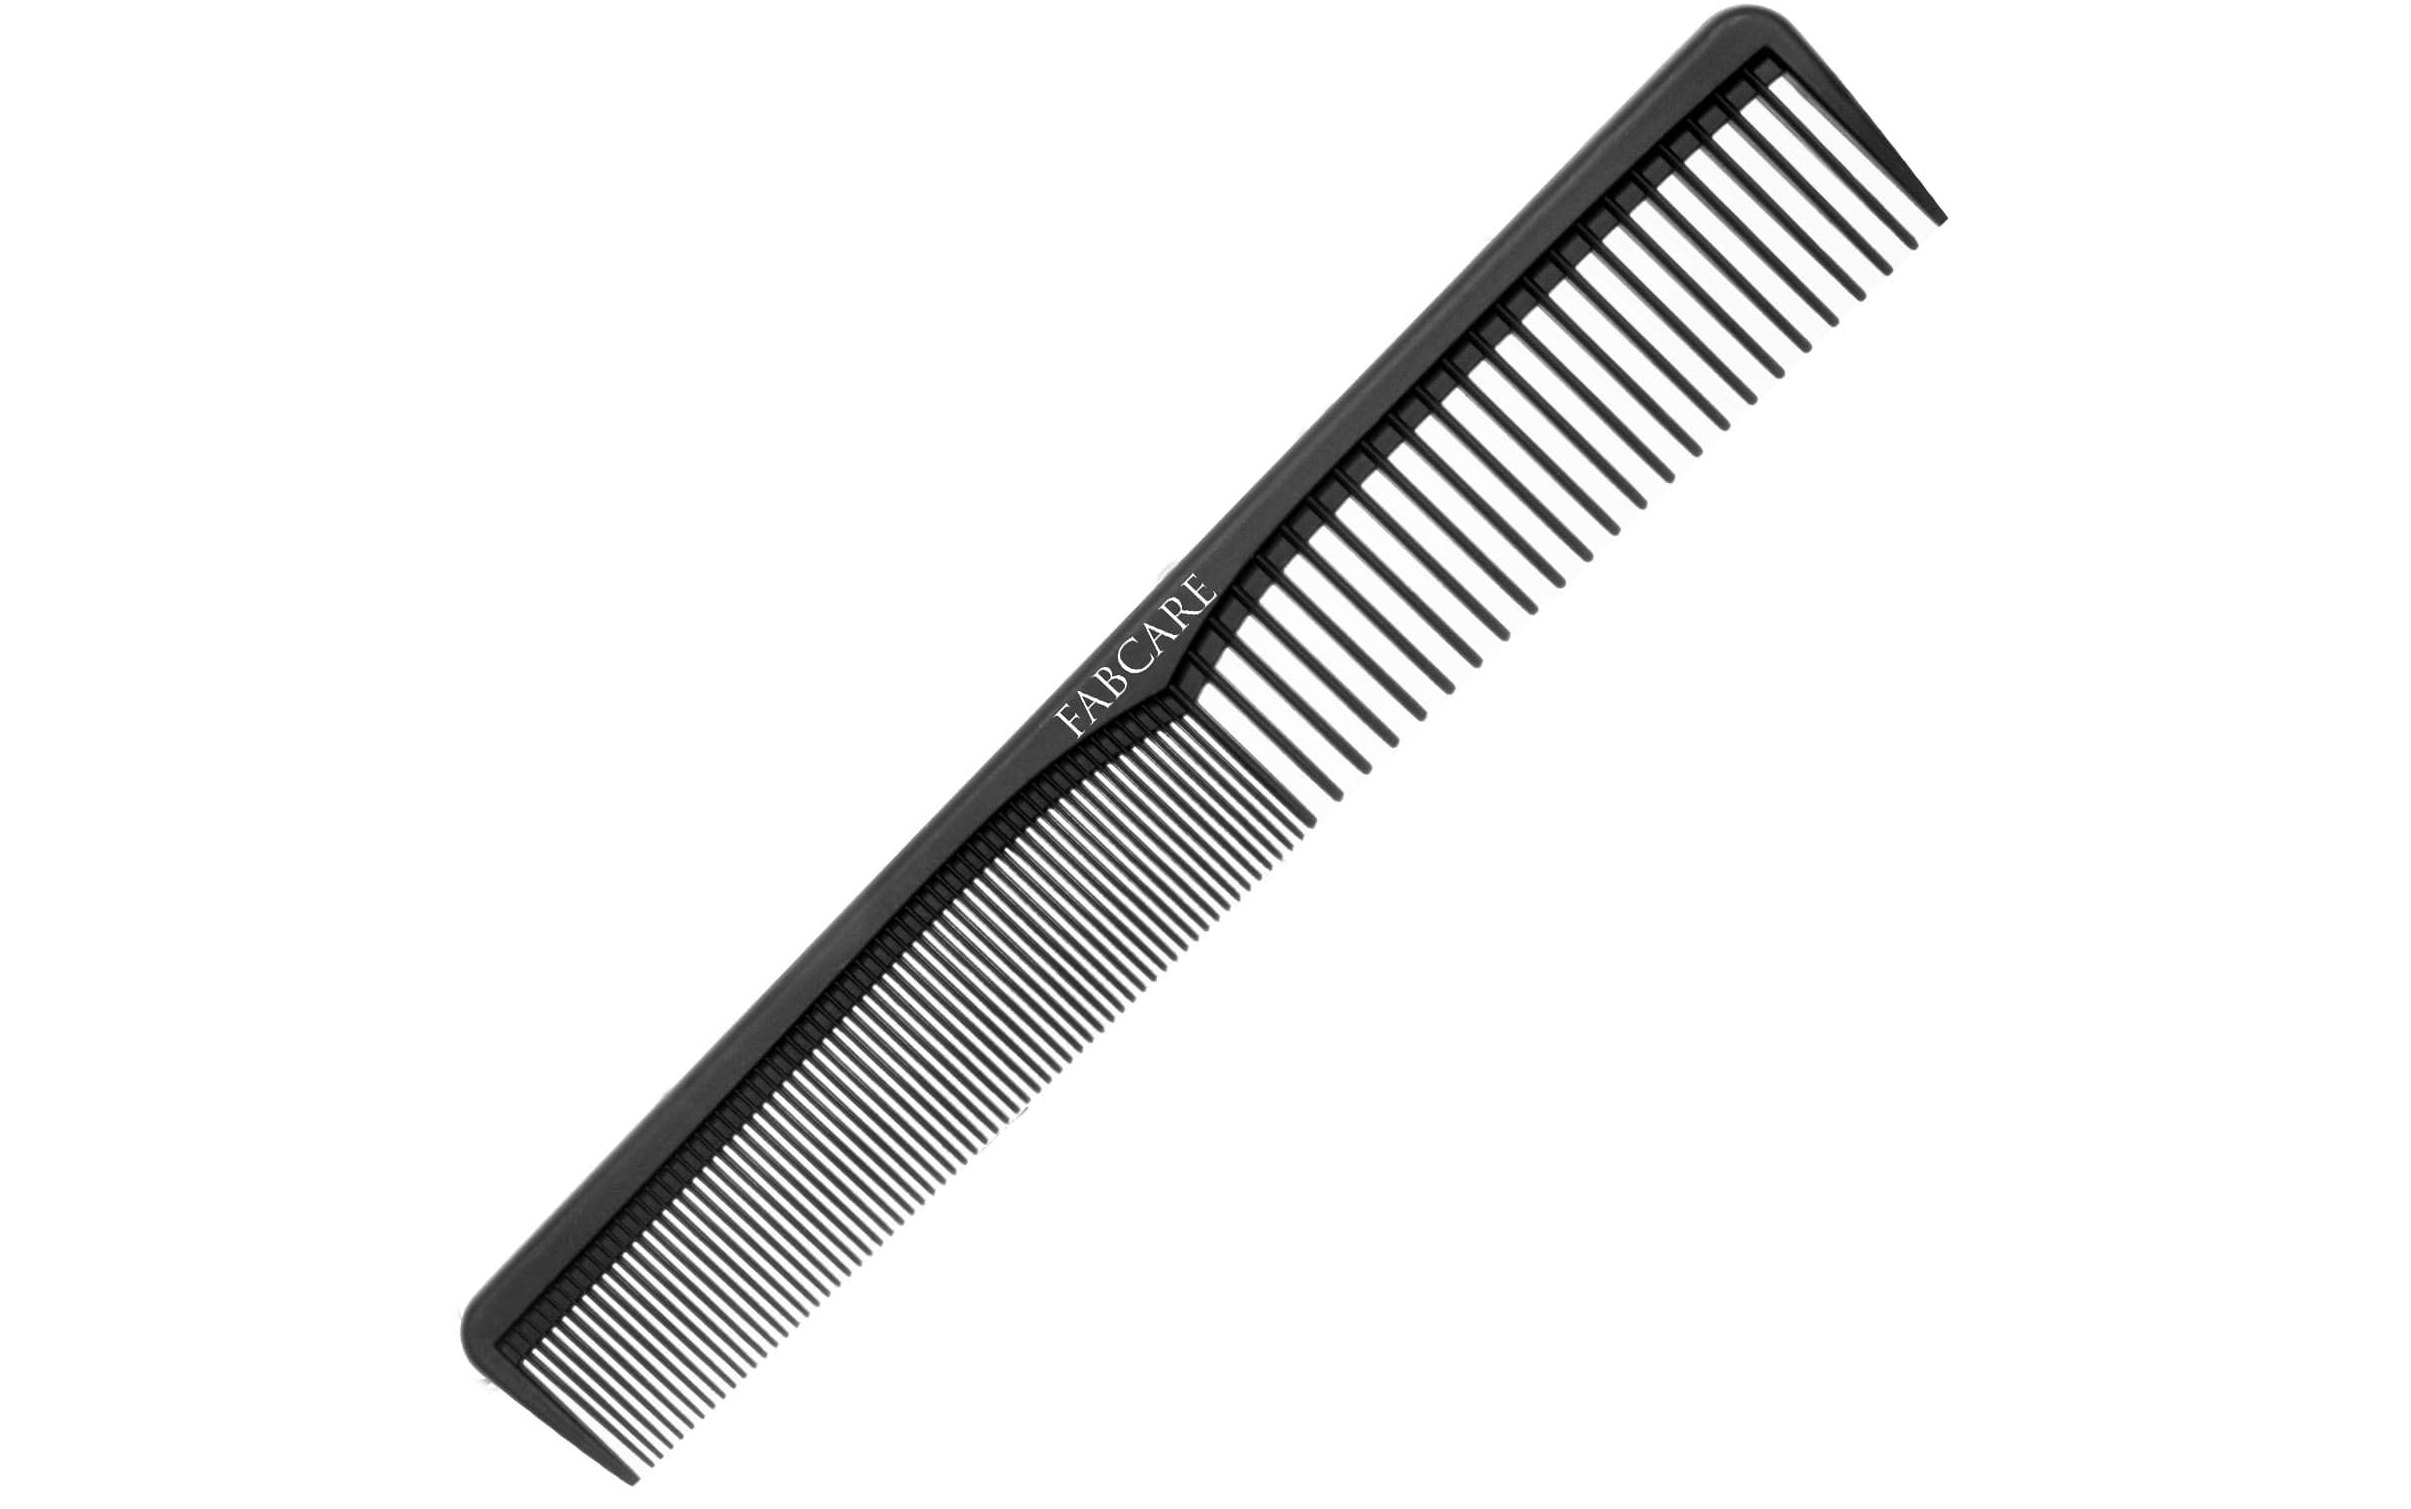 Consigli rapidi per tagliarsi i capelli a casa: introduzione al